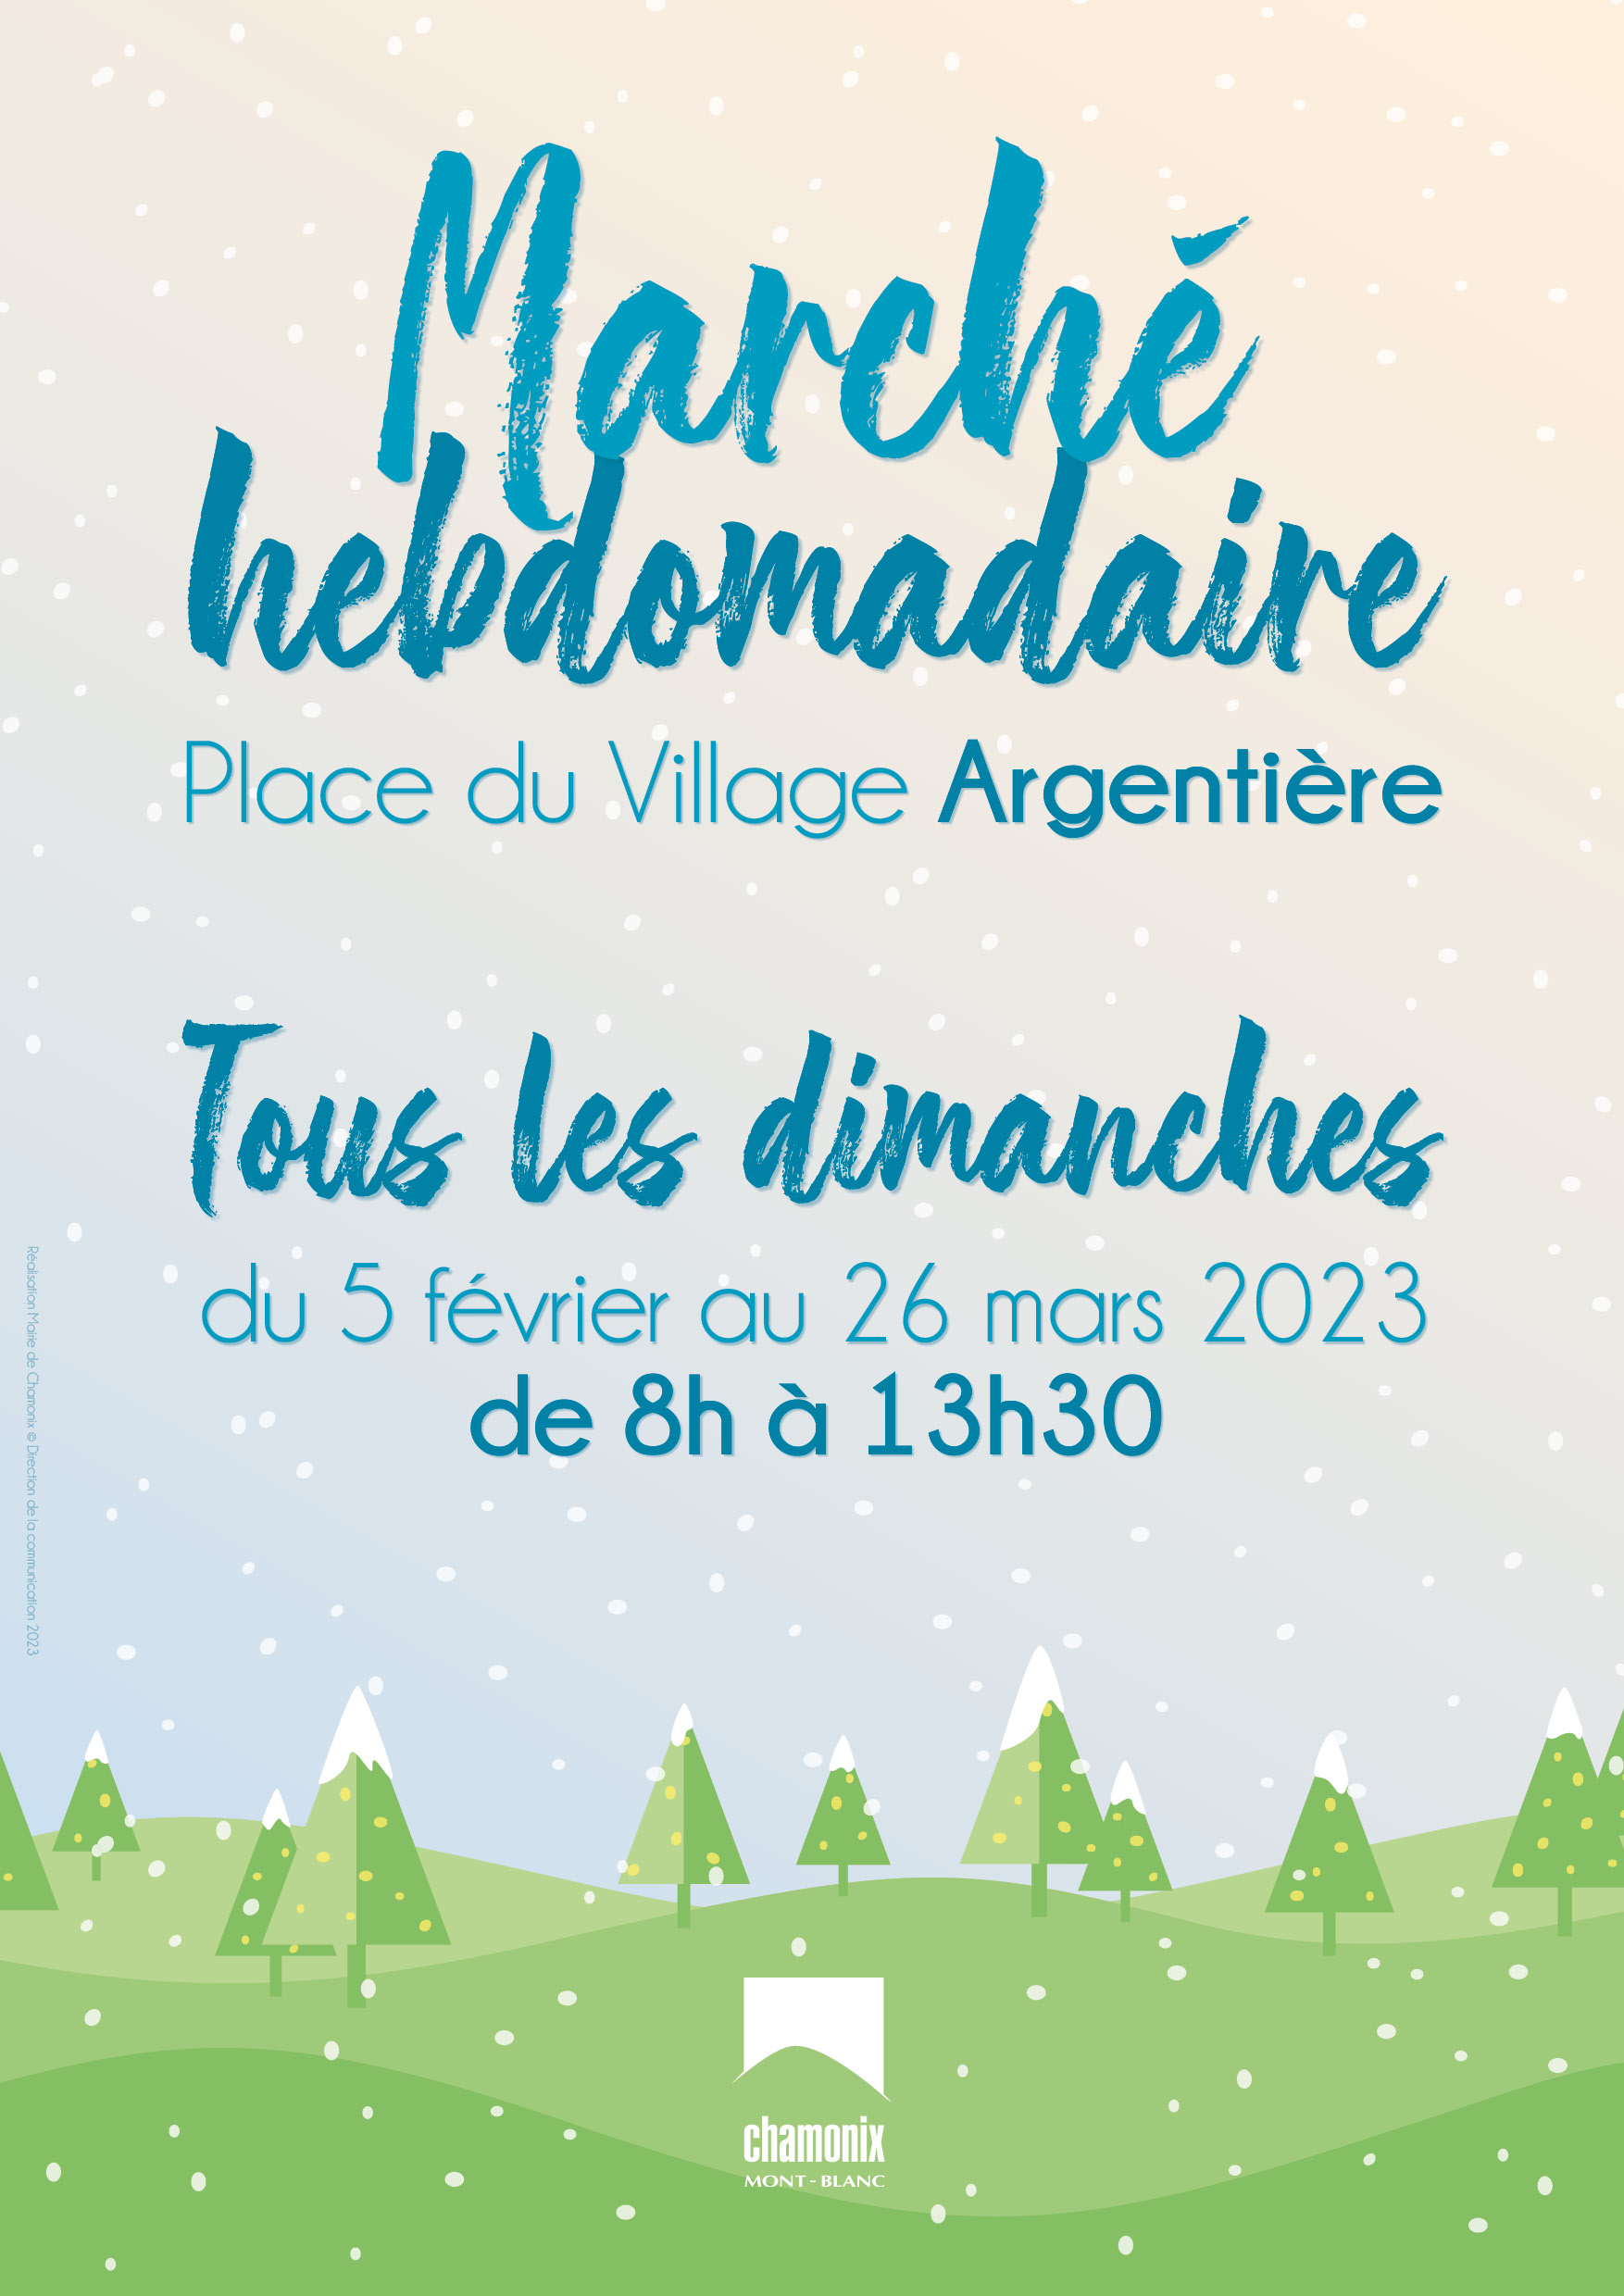 Maison de Village Marché Hebdomadaire affiche A3 hiver 2023 WEB